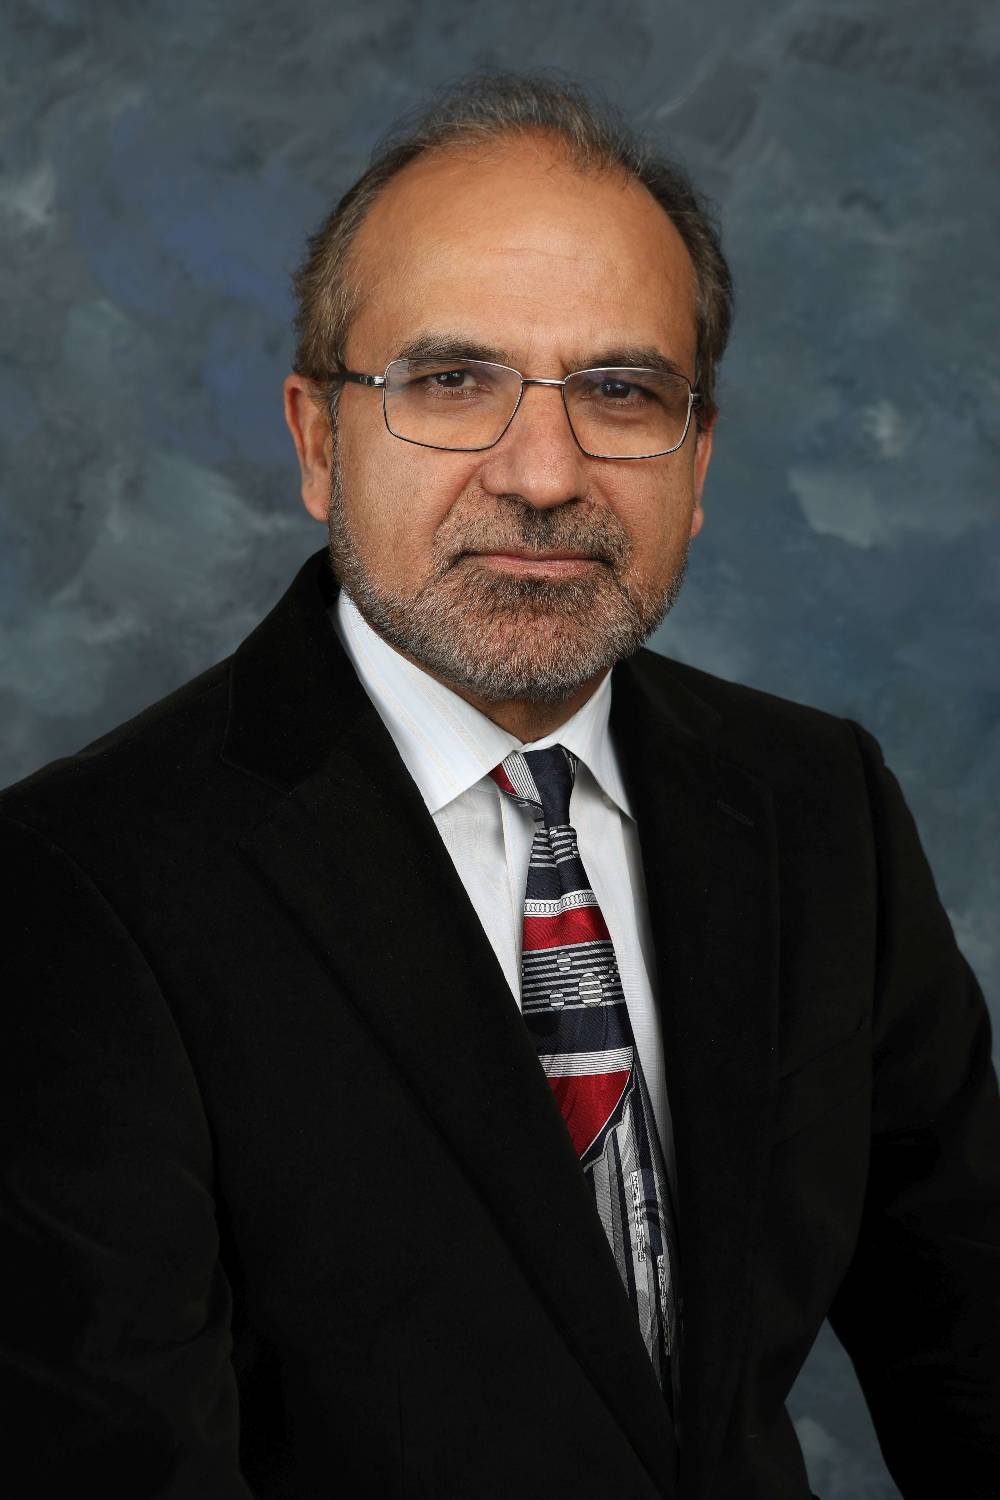 Dr. Khan